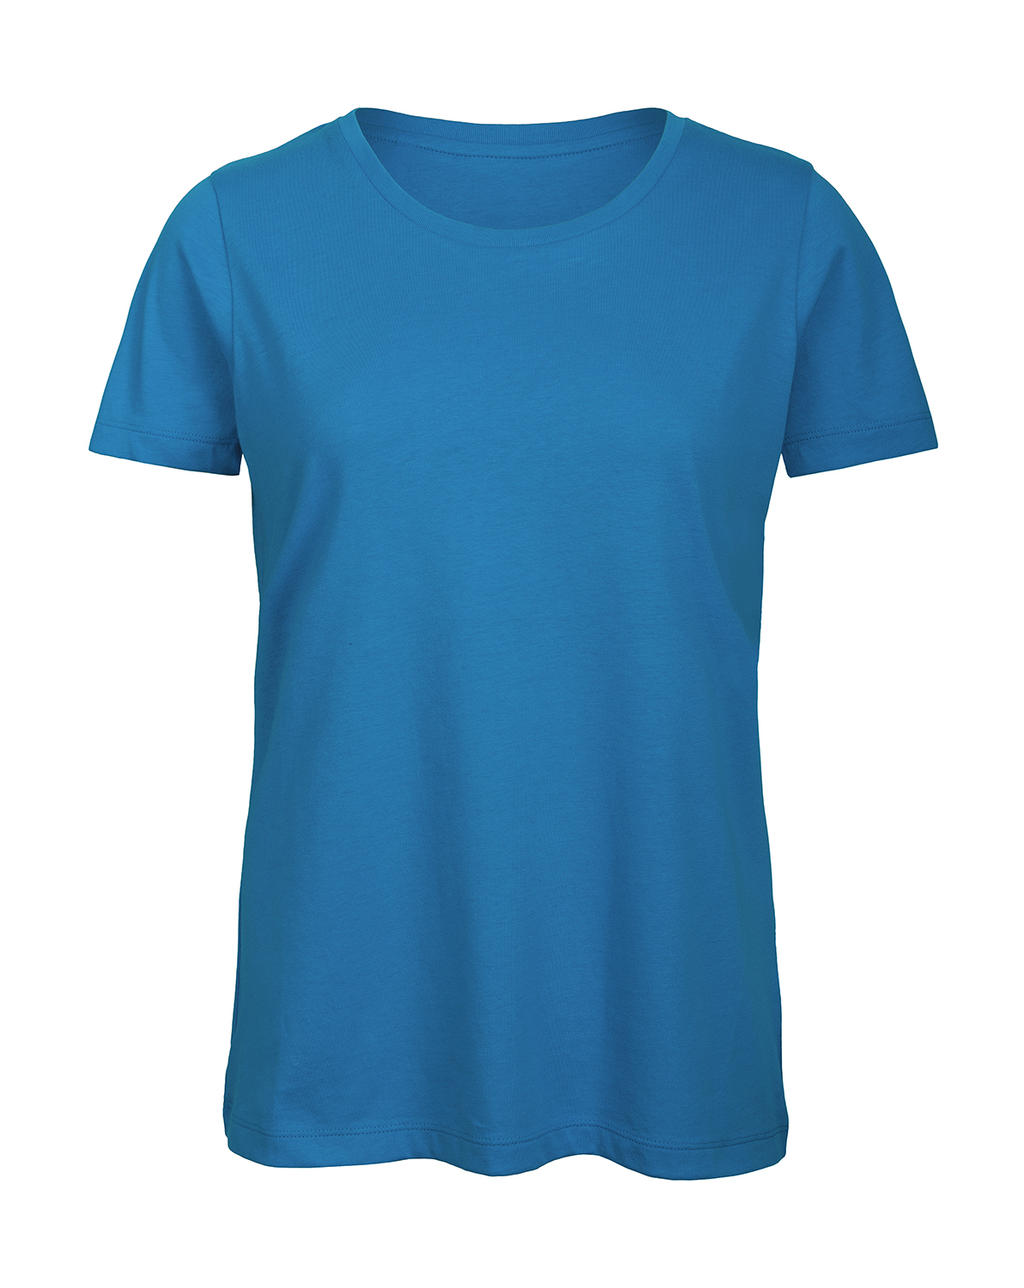 Tričko dámské B&C Jersey - světle modré, XL